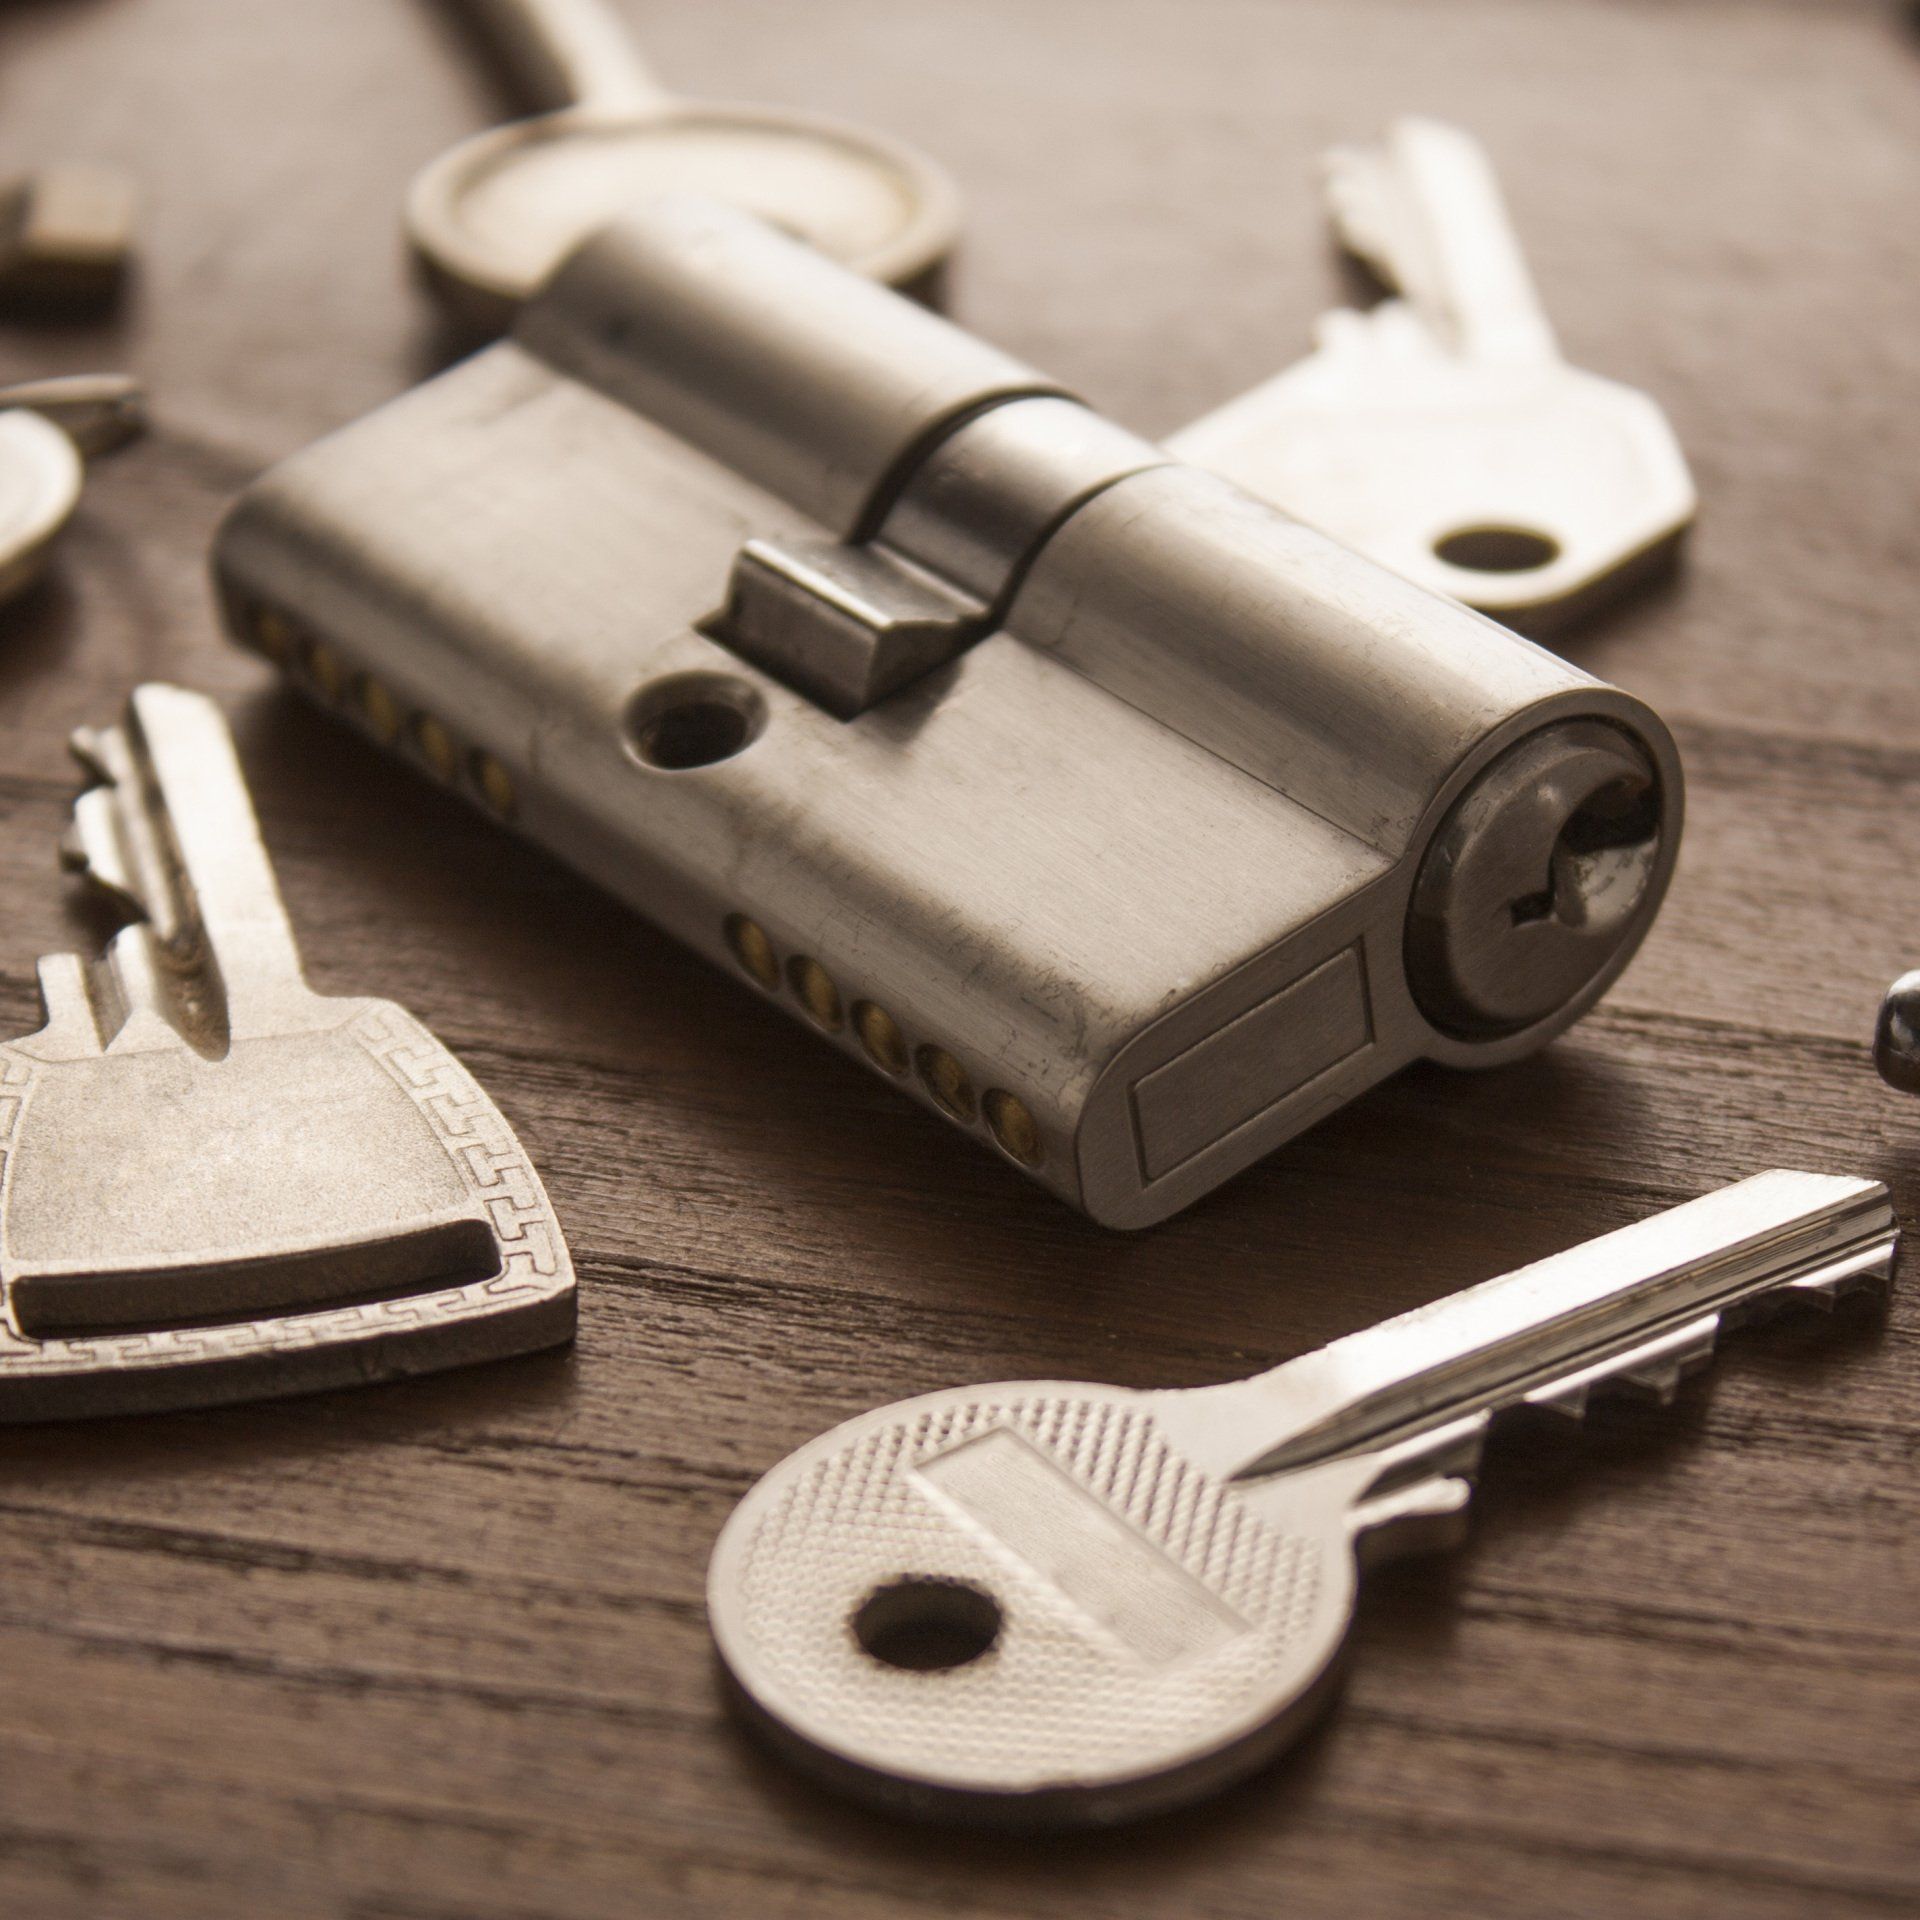 Locks and Keys - locksmith in Greenville, North Carolina